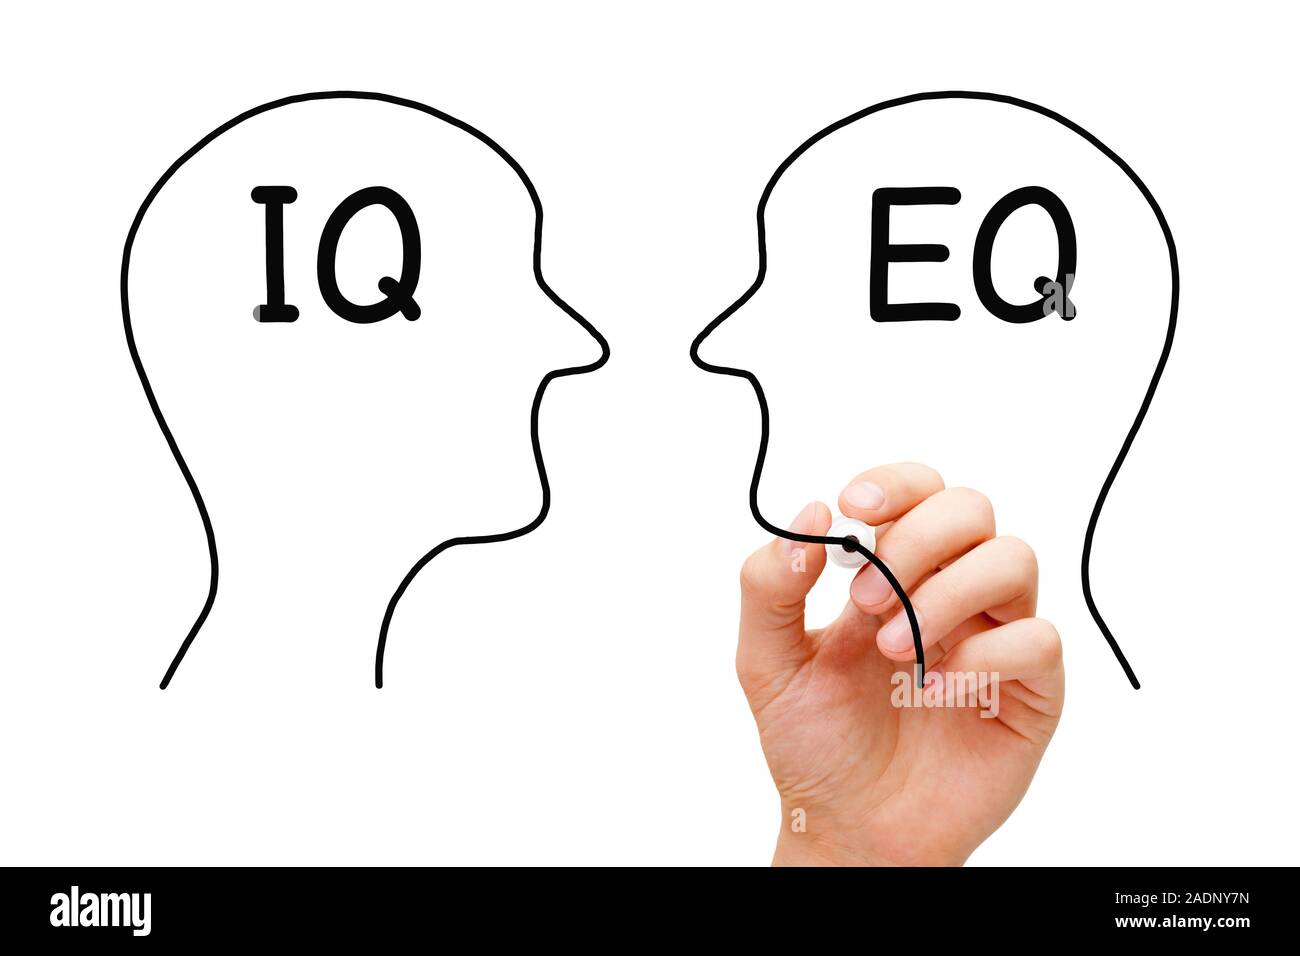 Disegno a mano IQ quoziente di intelligenza versus EQ intelligenza emotiva quoziente concetto con marcatore sul panno trasparente bordo isolato su bianco backgr Foto Stock